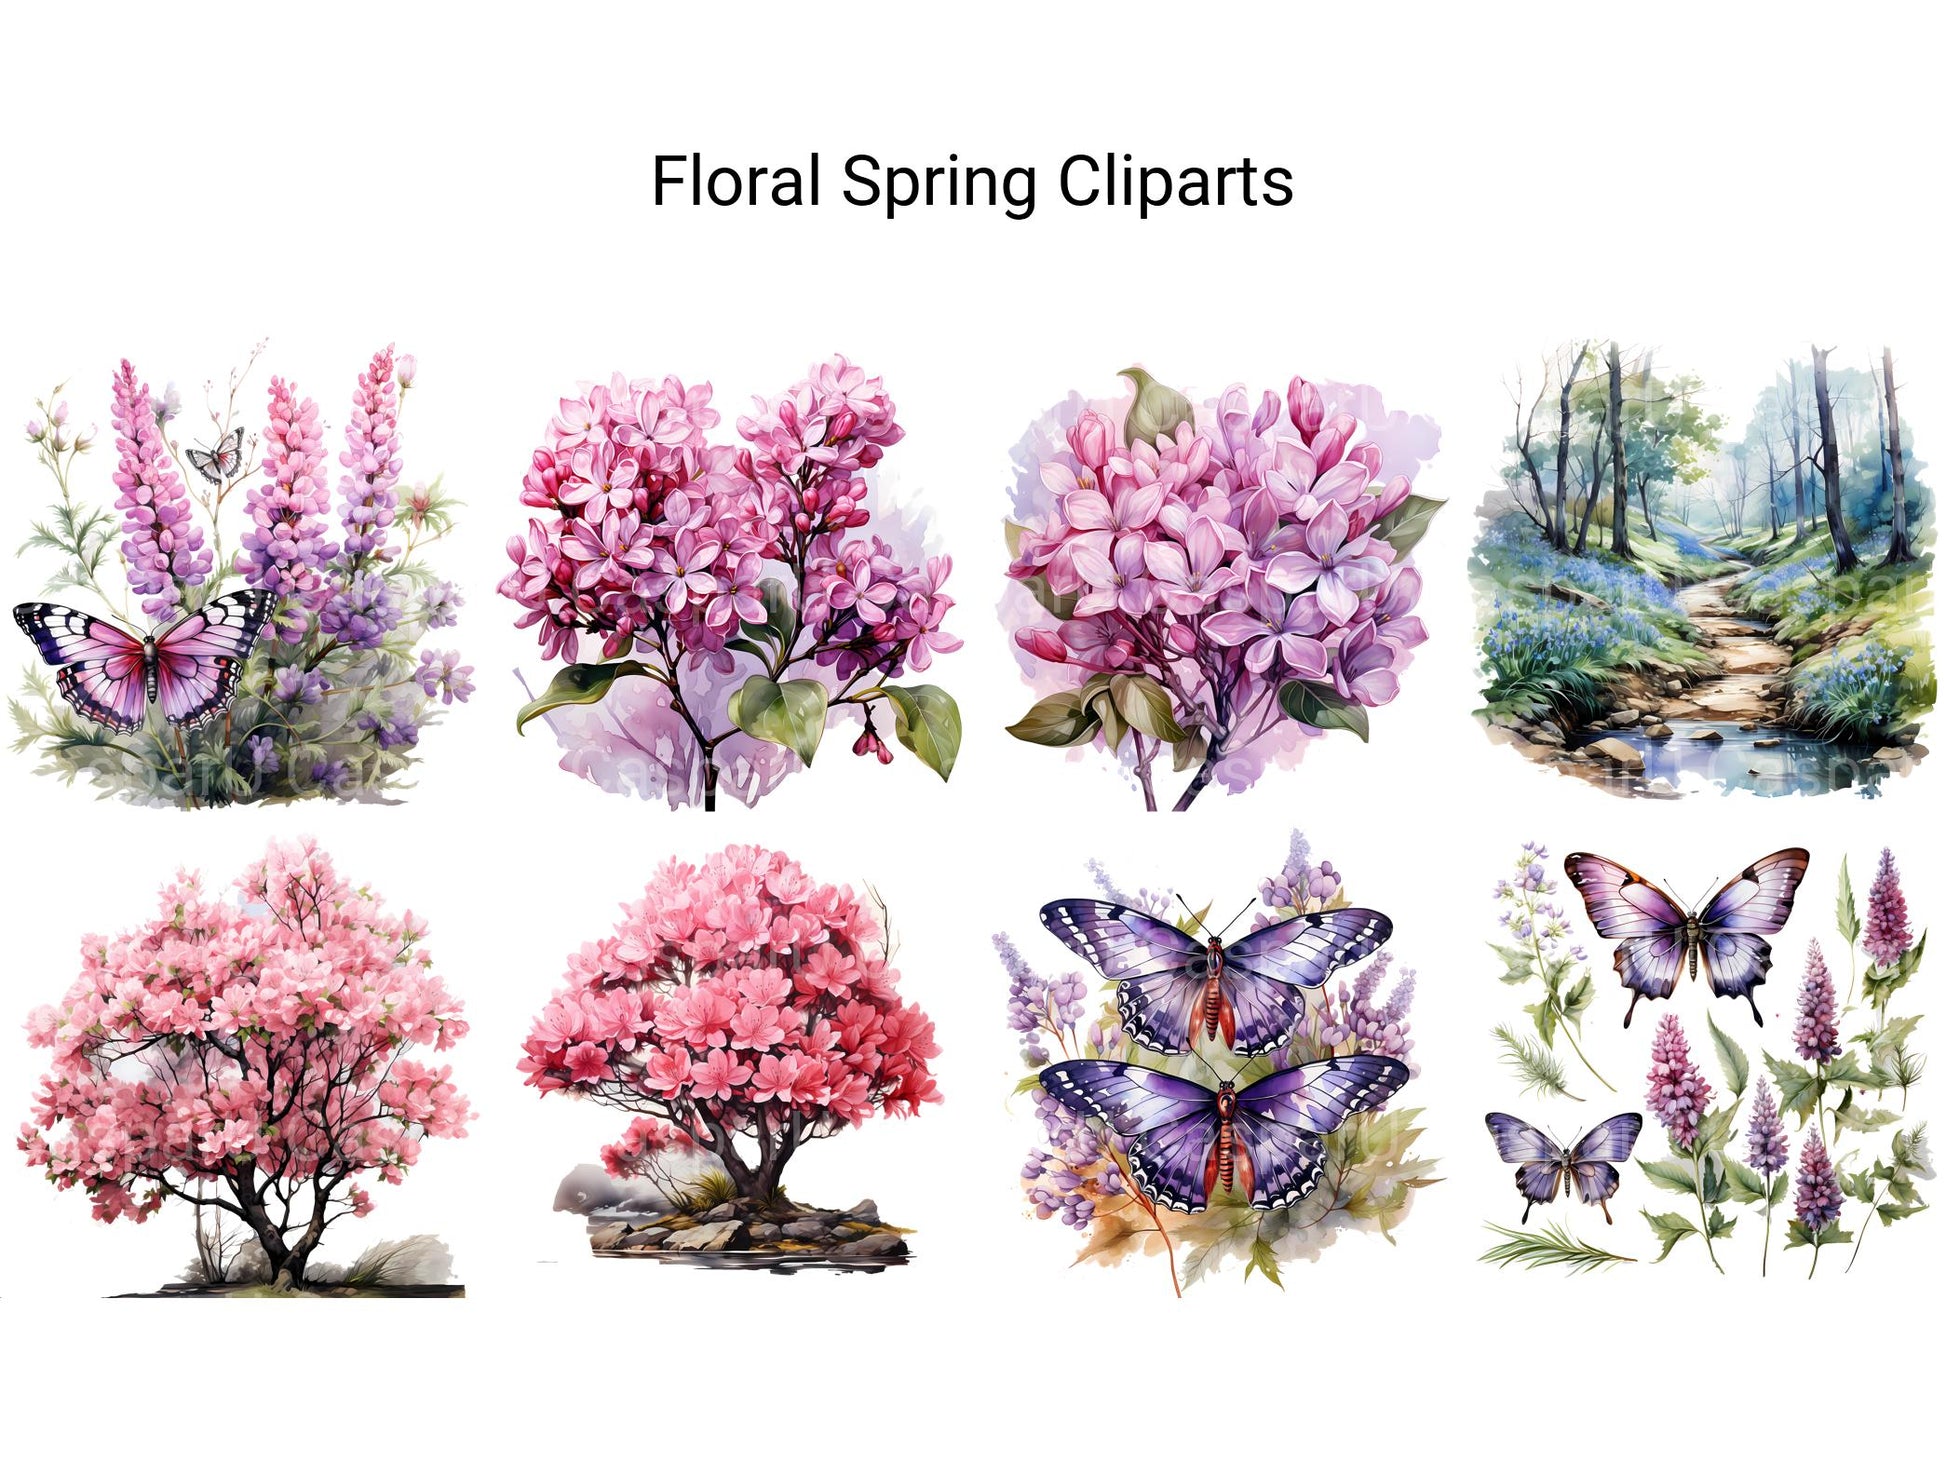 Floral Spring Clipart - CraftNest